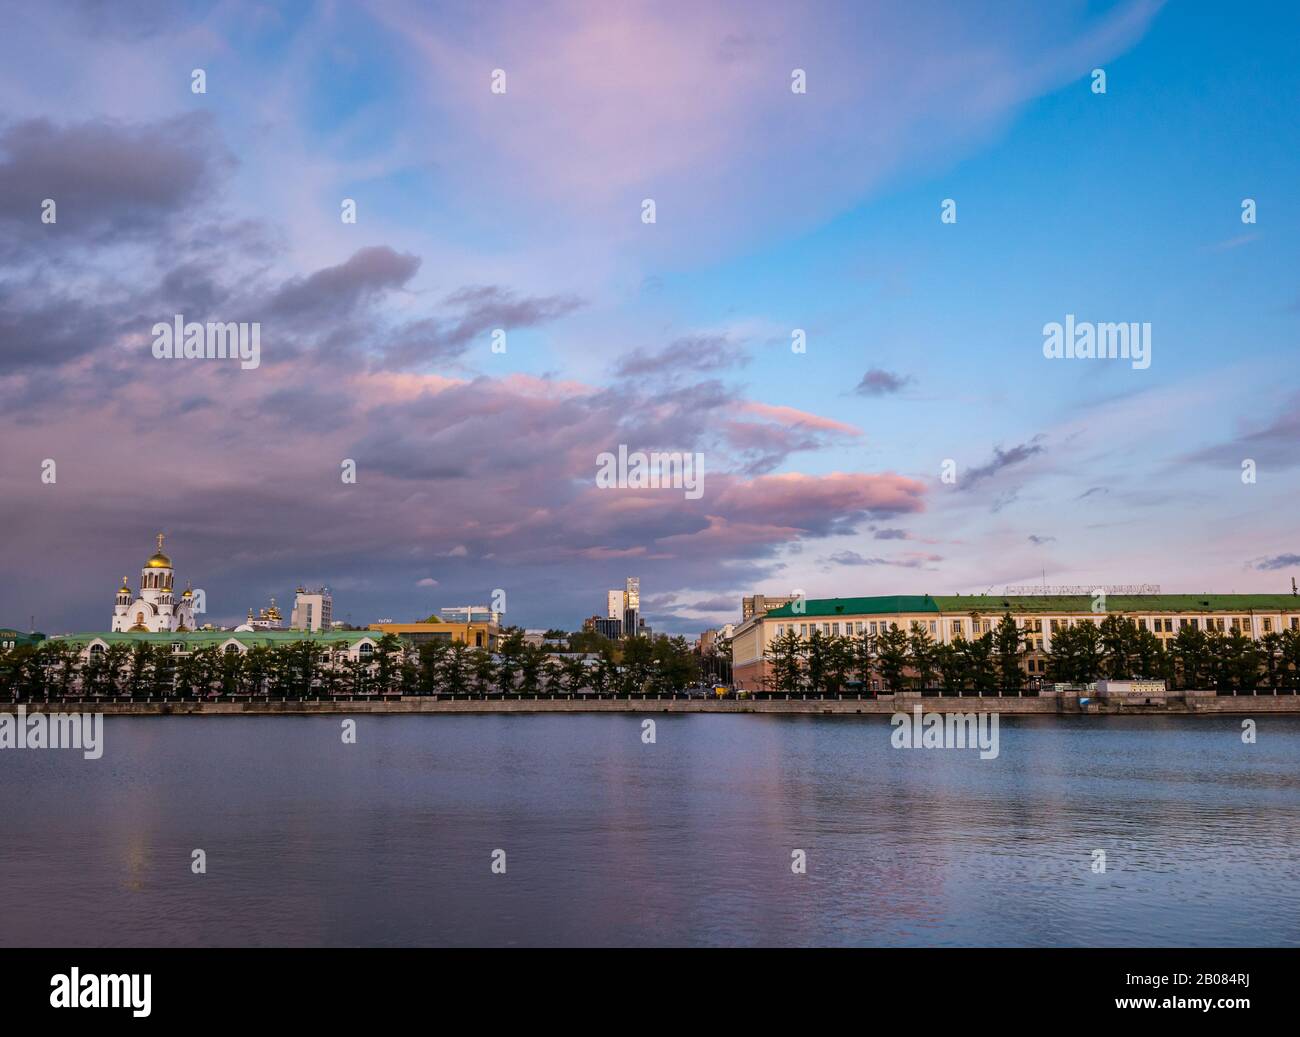 Gorodskoy Prud o el lago de la ciudad, dique del río Iset al atardecer con nubes rosadas, Ekaterimburgo, Siberia, Rusia Foto de stock